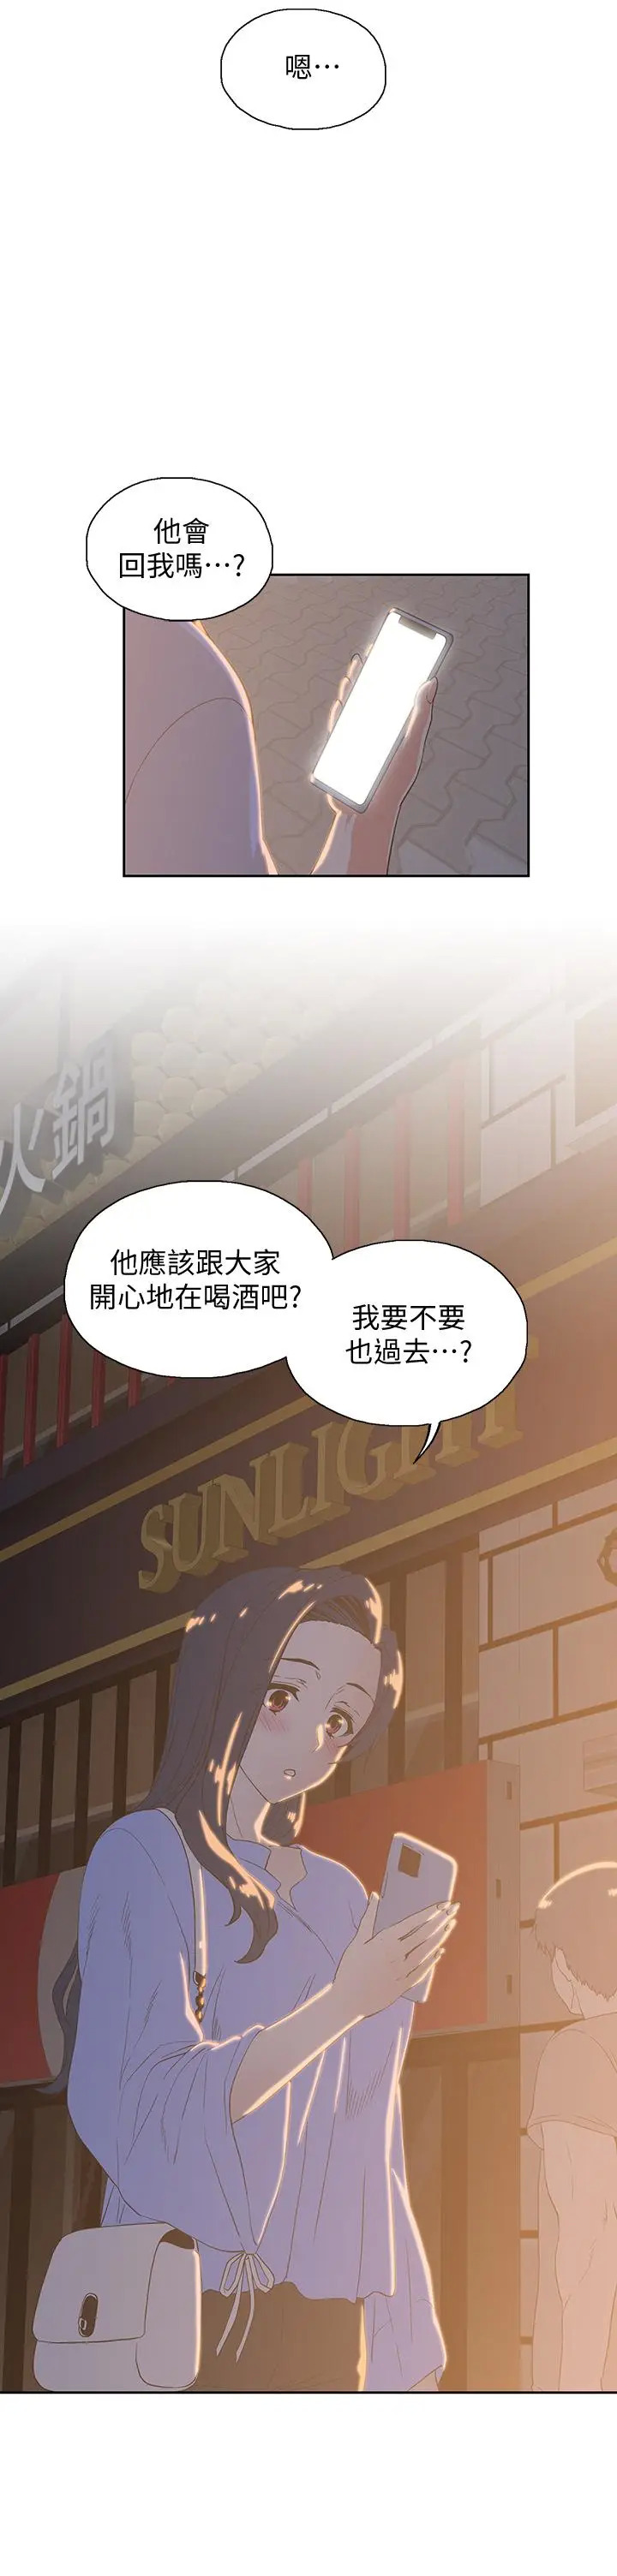 《梦幻速食店》漫画 第21话-帮我搓泡泡